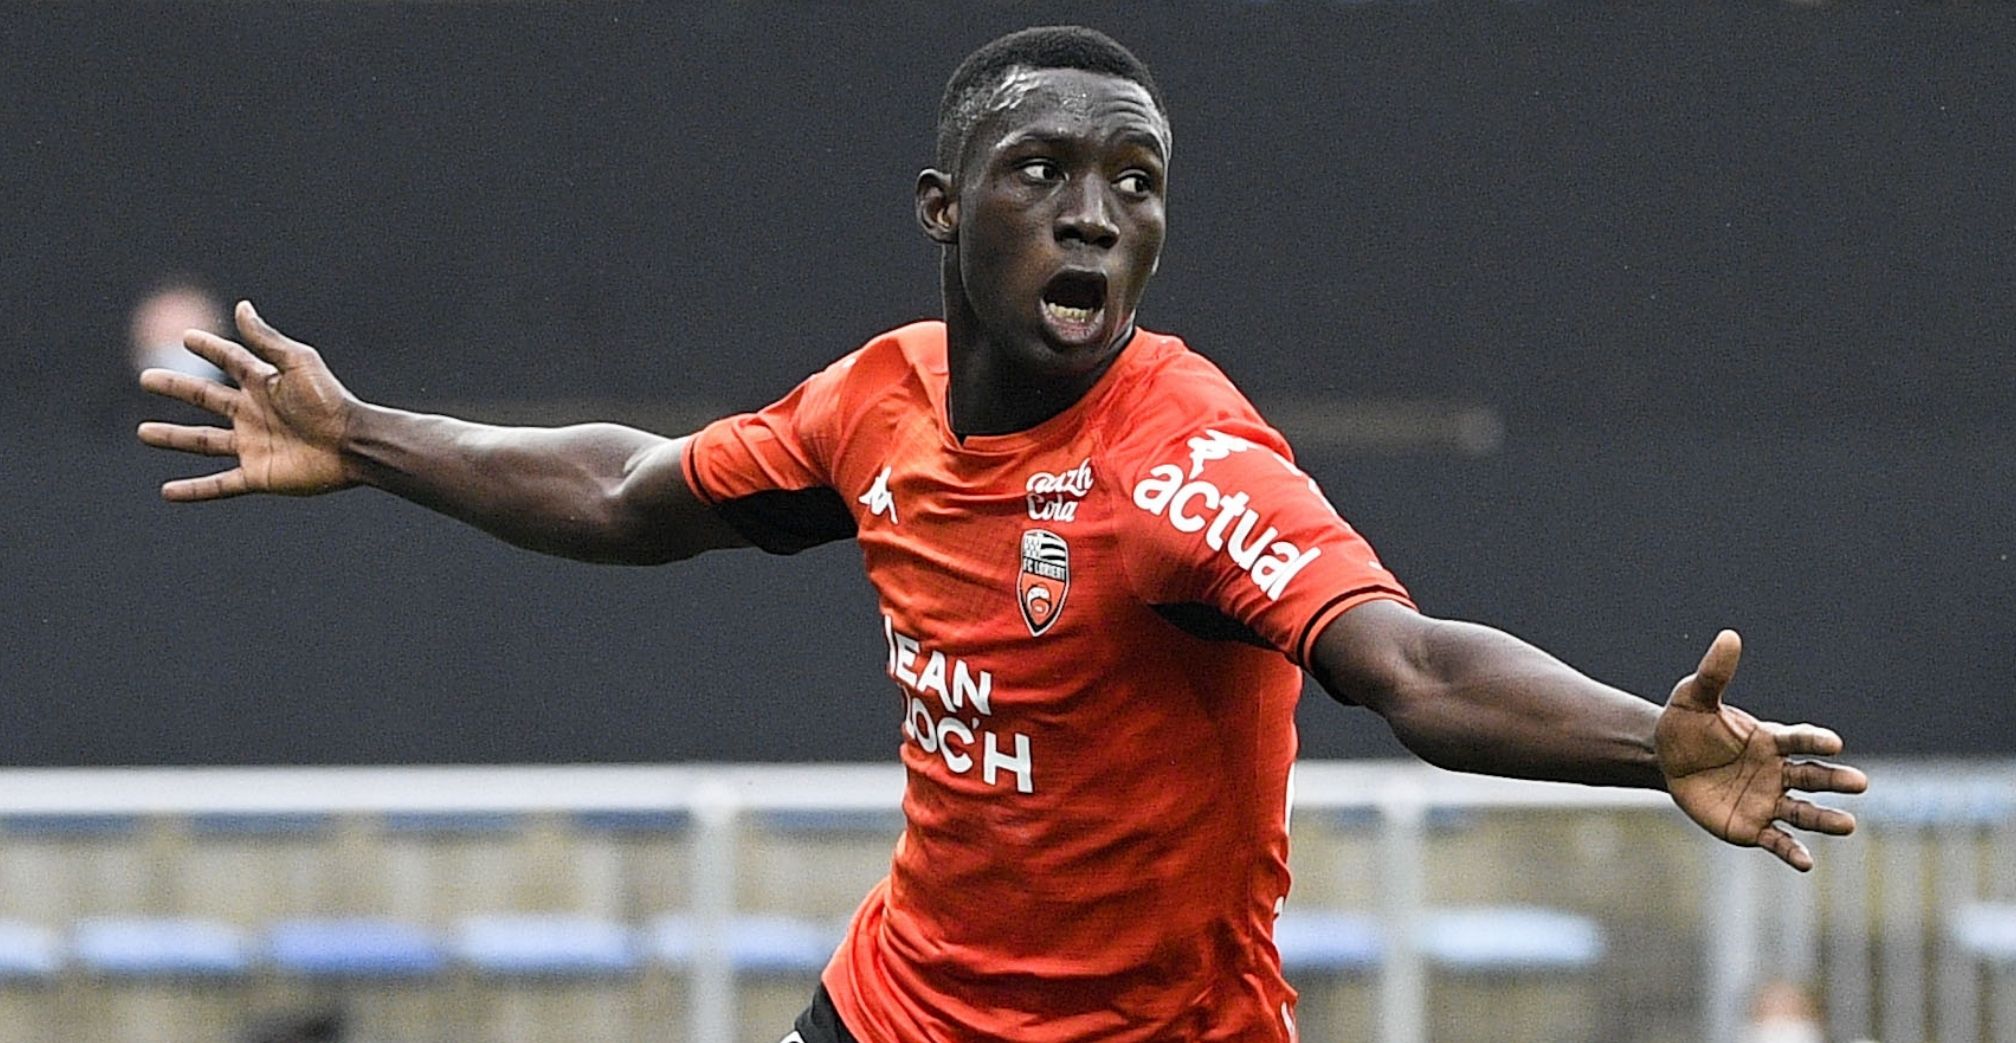 Soumano helps Lorient snap losing streak against Lens